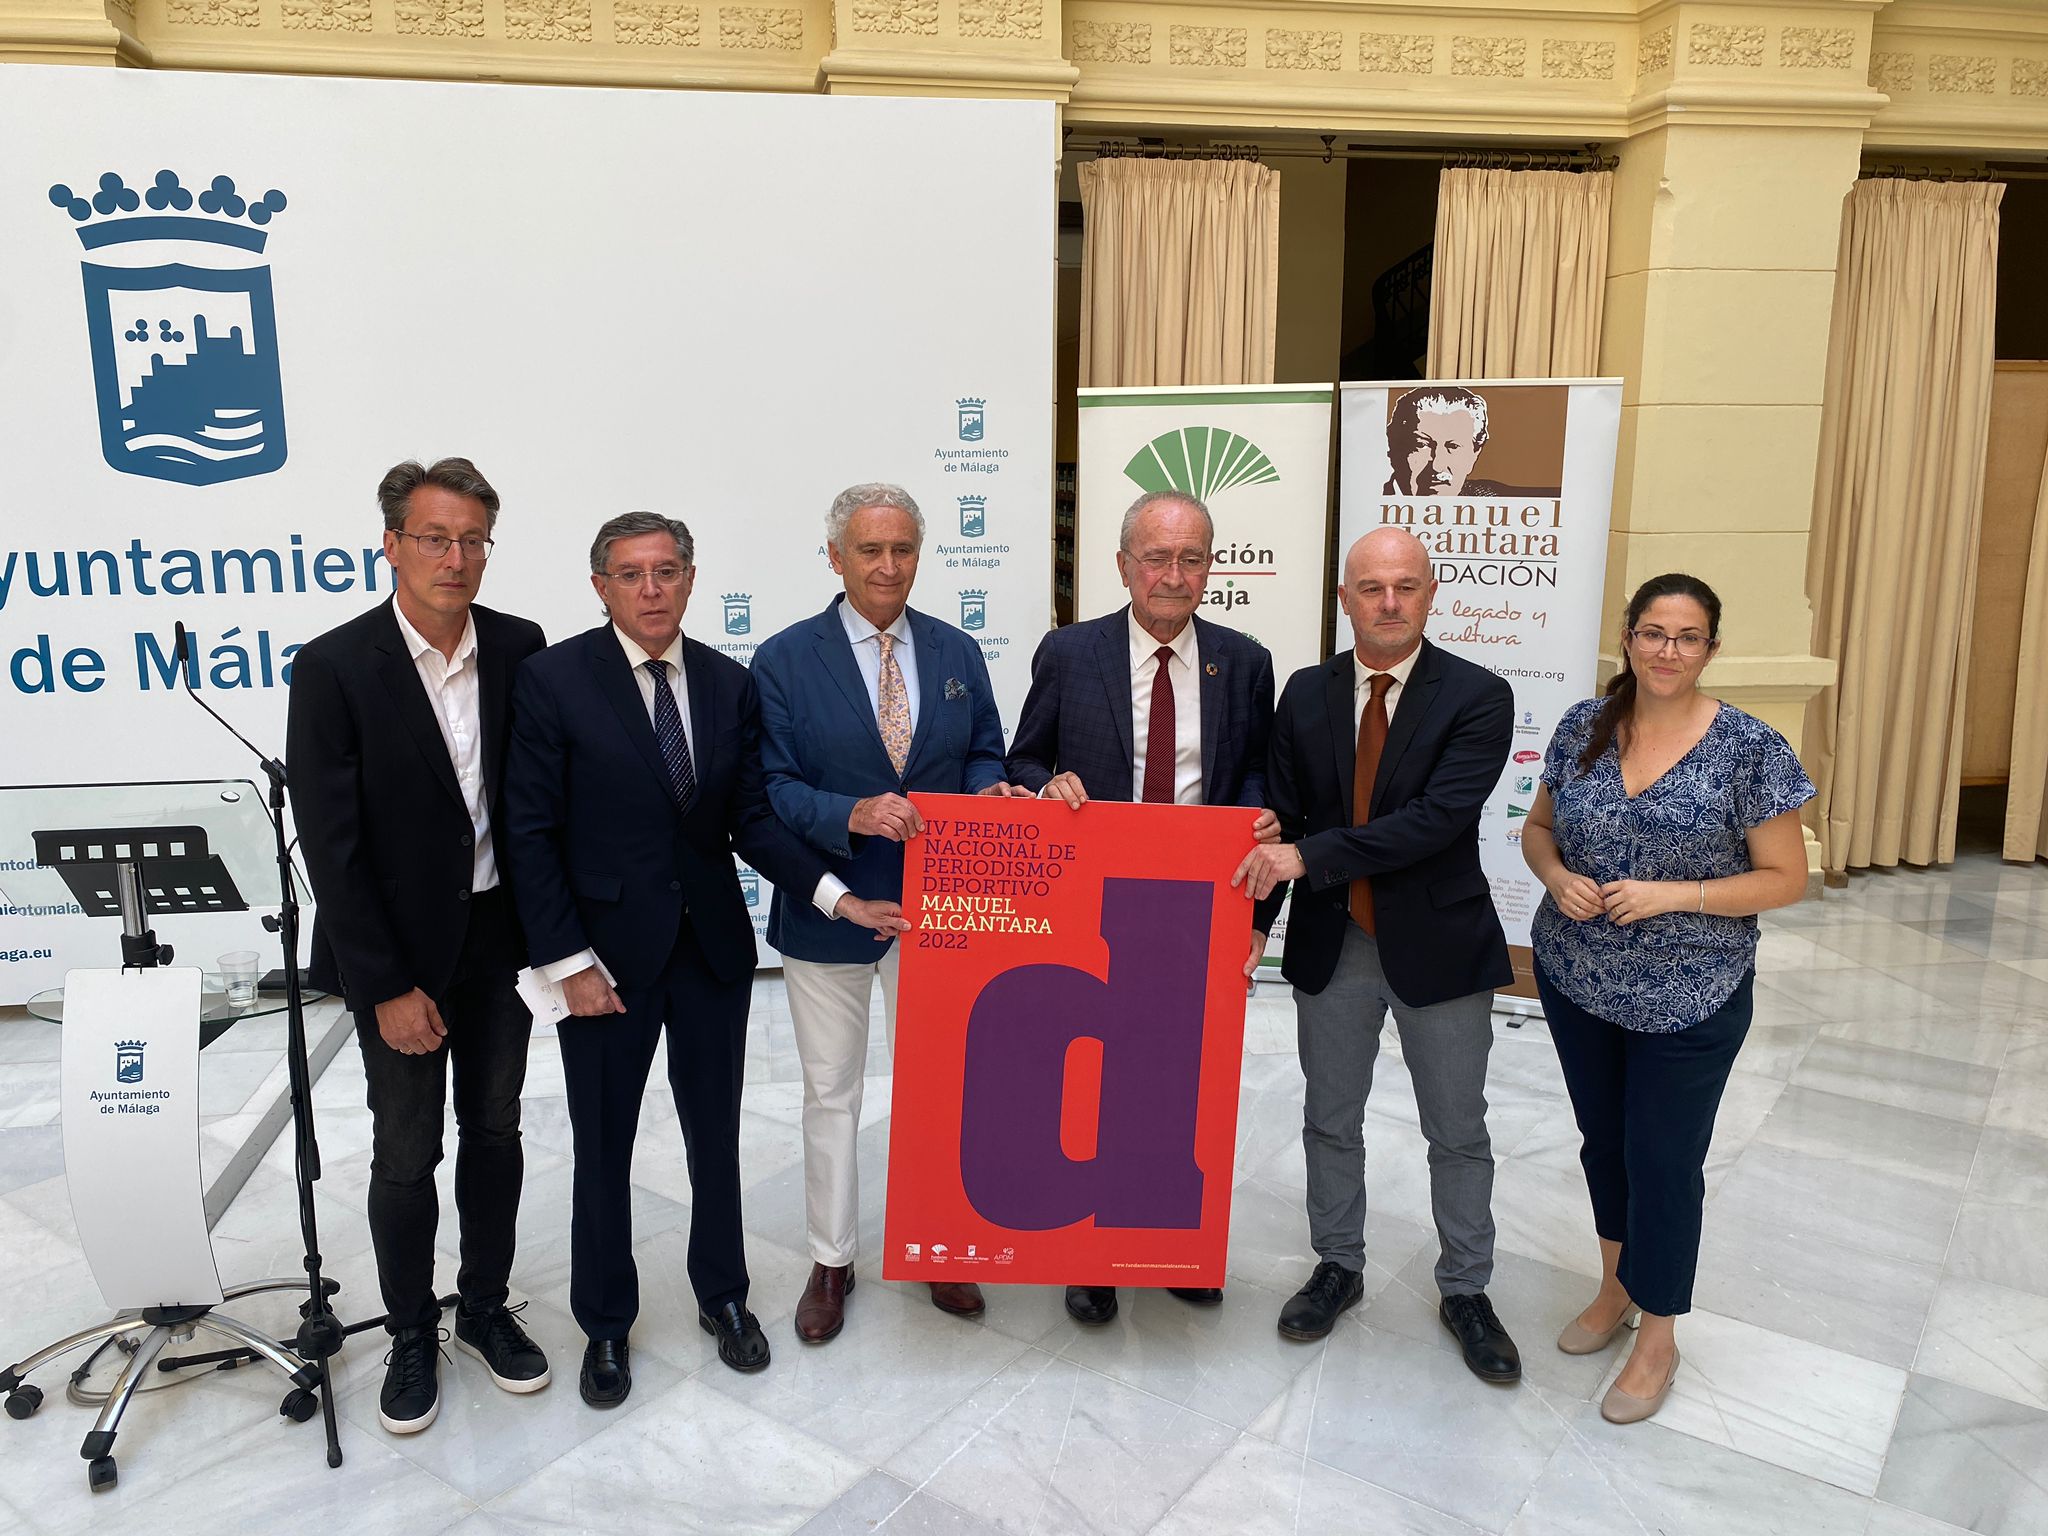 La Fundación Manuel Alcántara convoca su IV Premio Nacional de Periodismo Deportivo